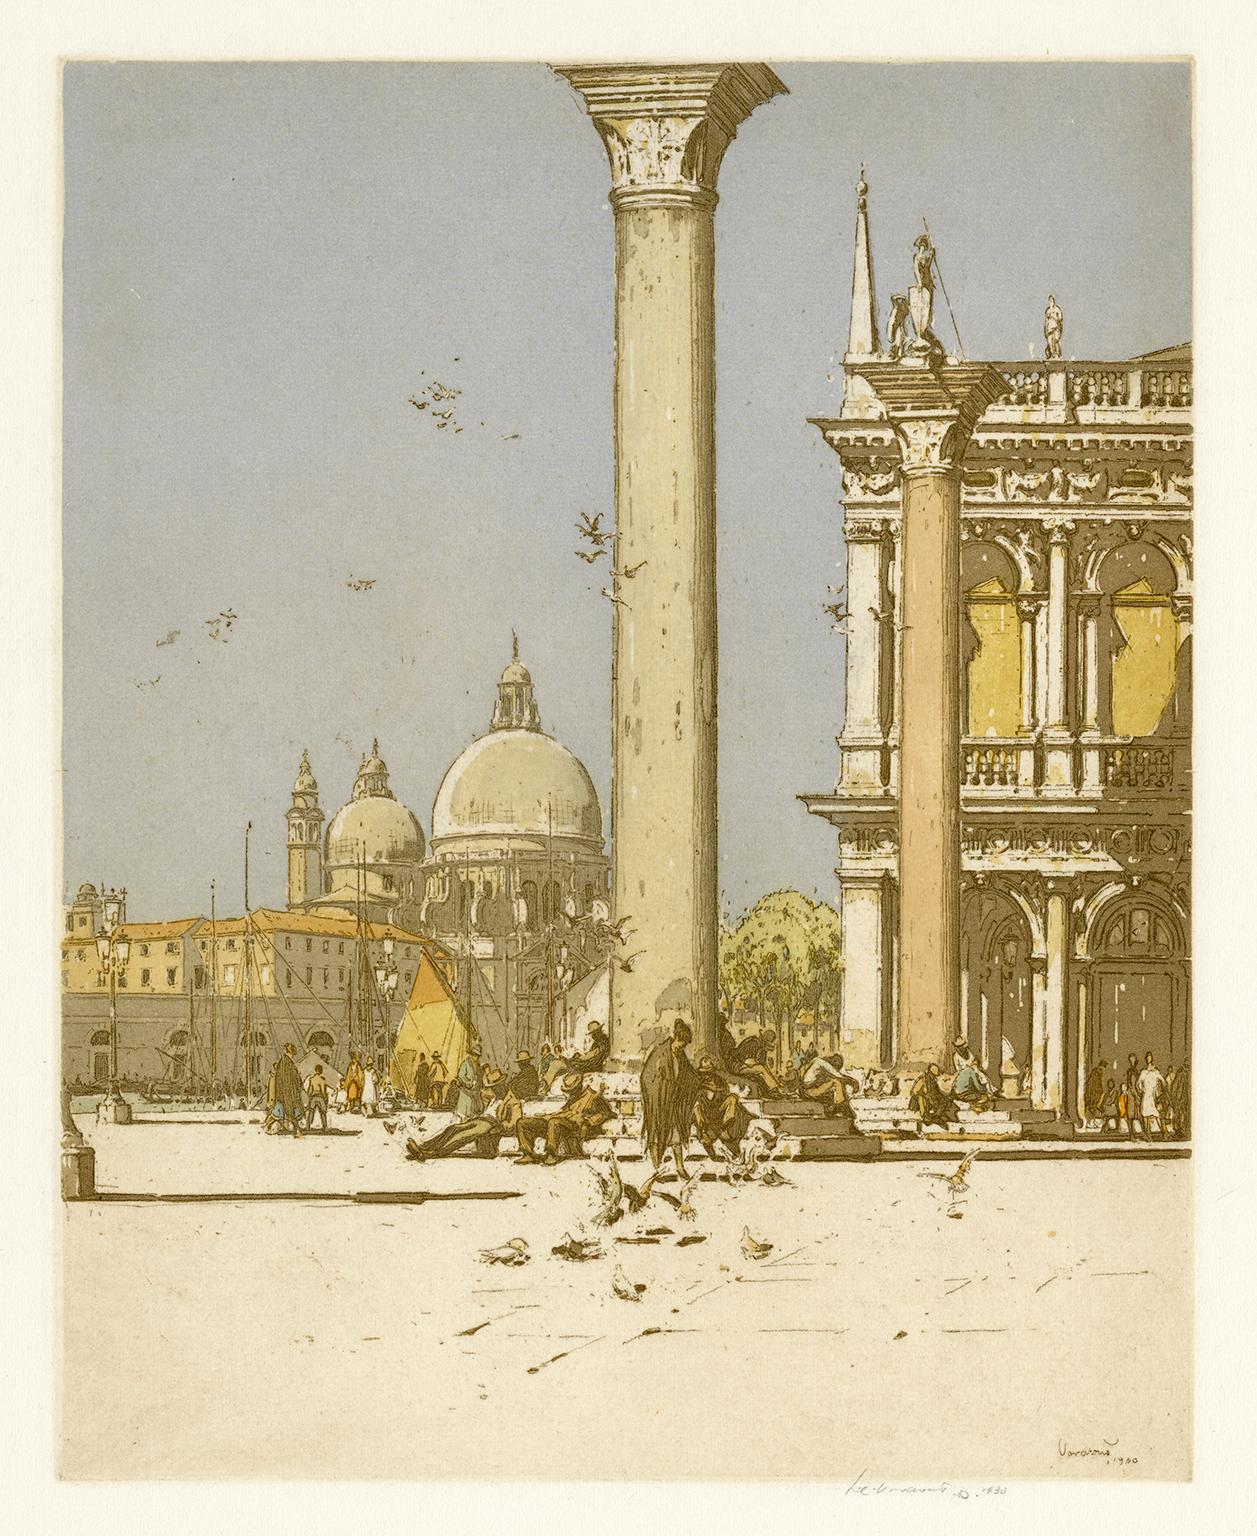 Landscape Print Jan C. Vondrous - Piazzetta, Venise